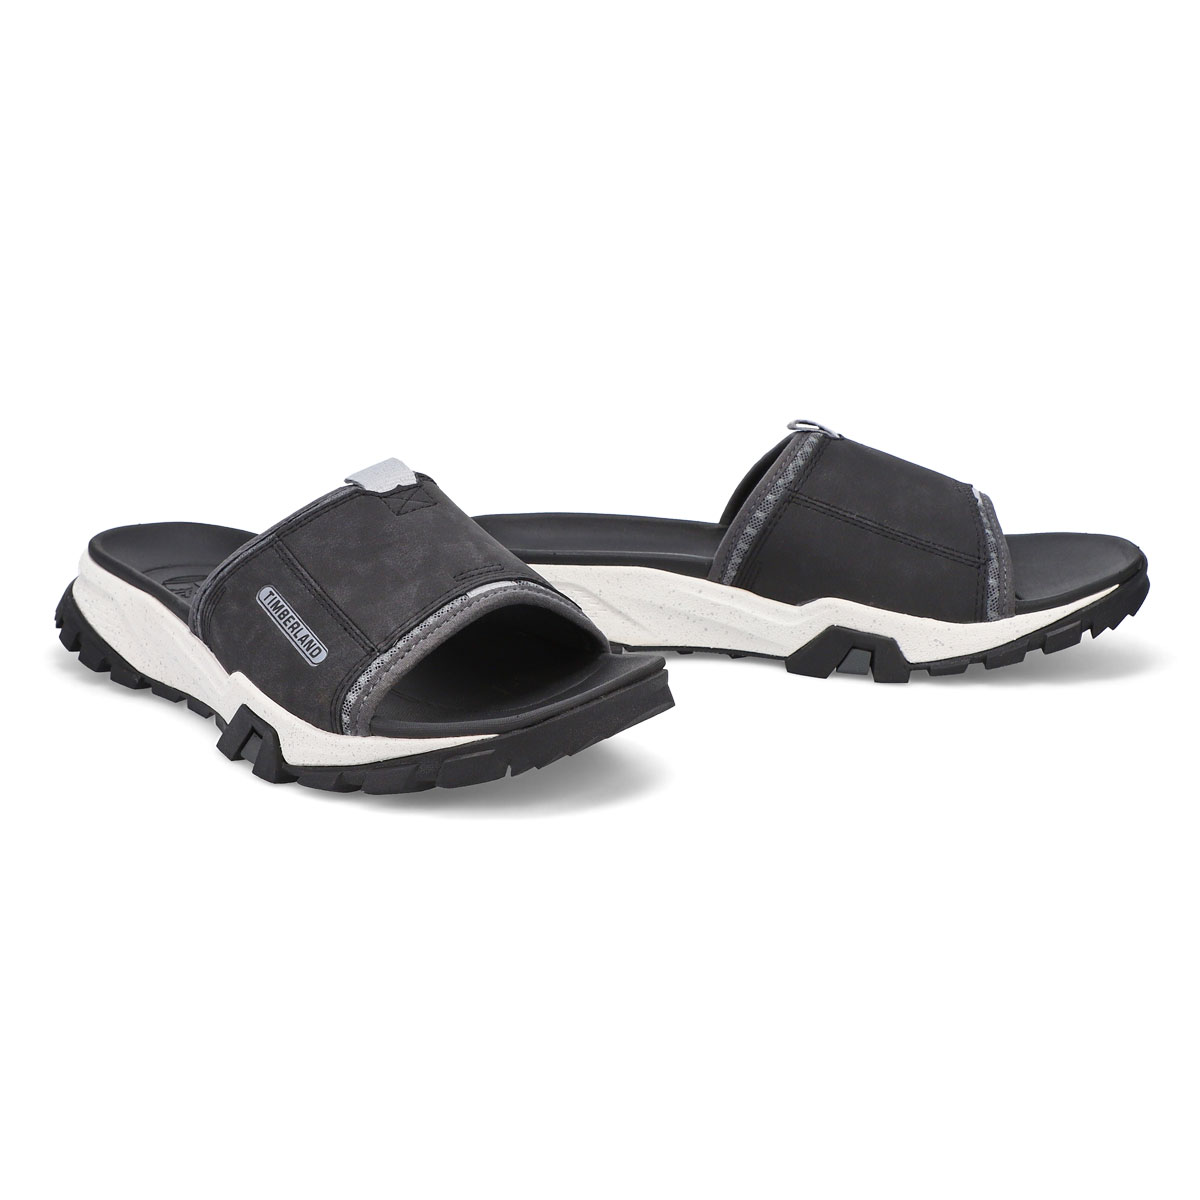 Men's Garrison Trail Slide Sandal - Black